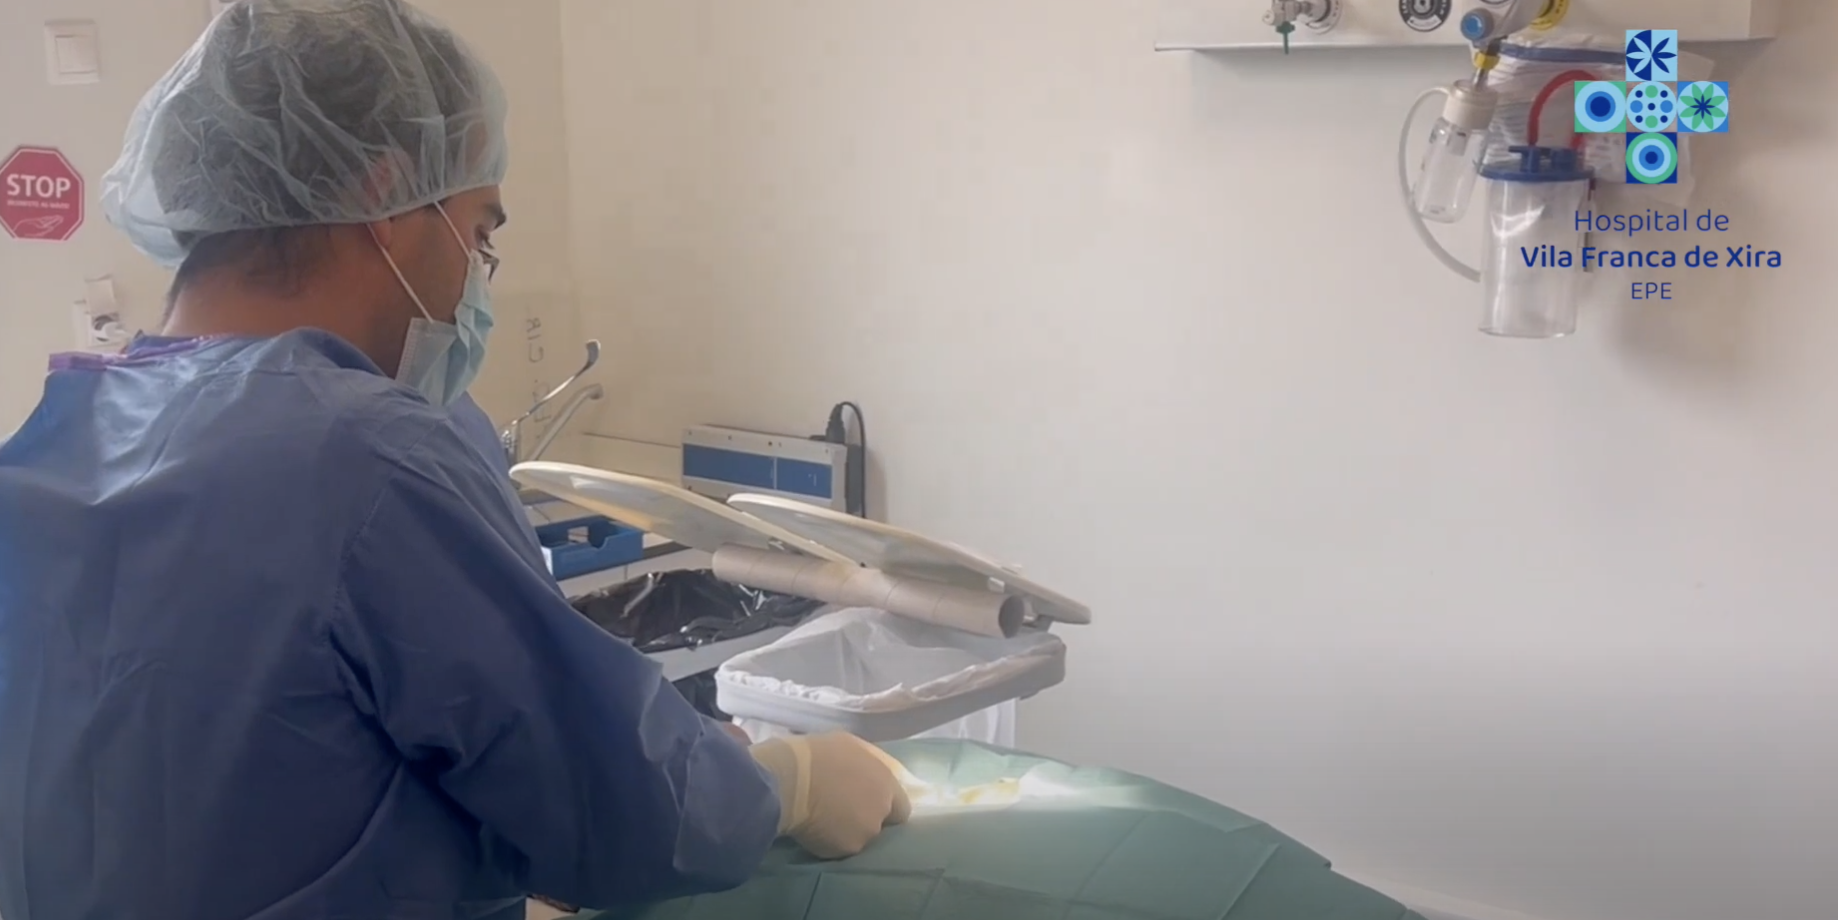 hospital-de-vila-franca-de-xira-HVFX realizou primeiro implante de dispositivo registador de eventos cardíacos